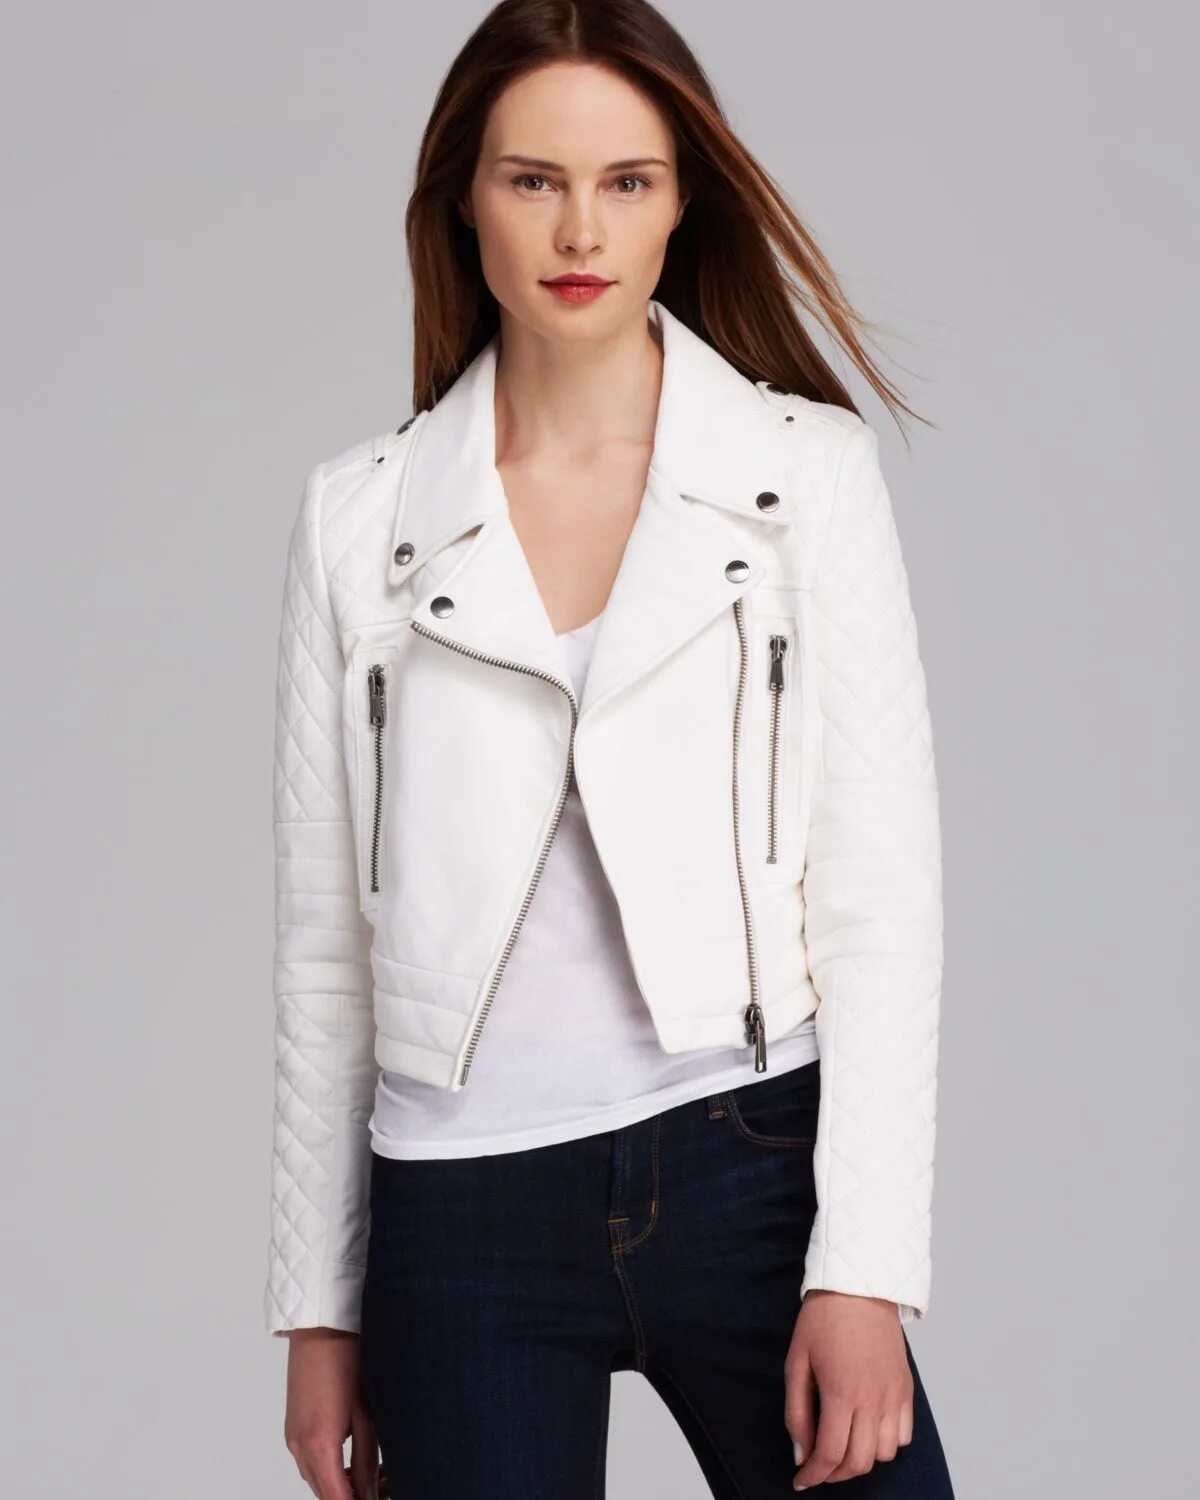 White jacket. Marc New York женская косуха. Белая кожаная куртка женская. Белая косуха женская. Куртка косуха белая.